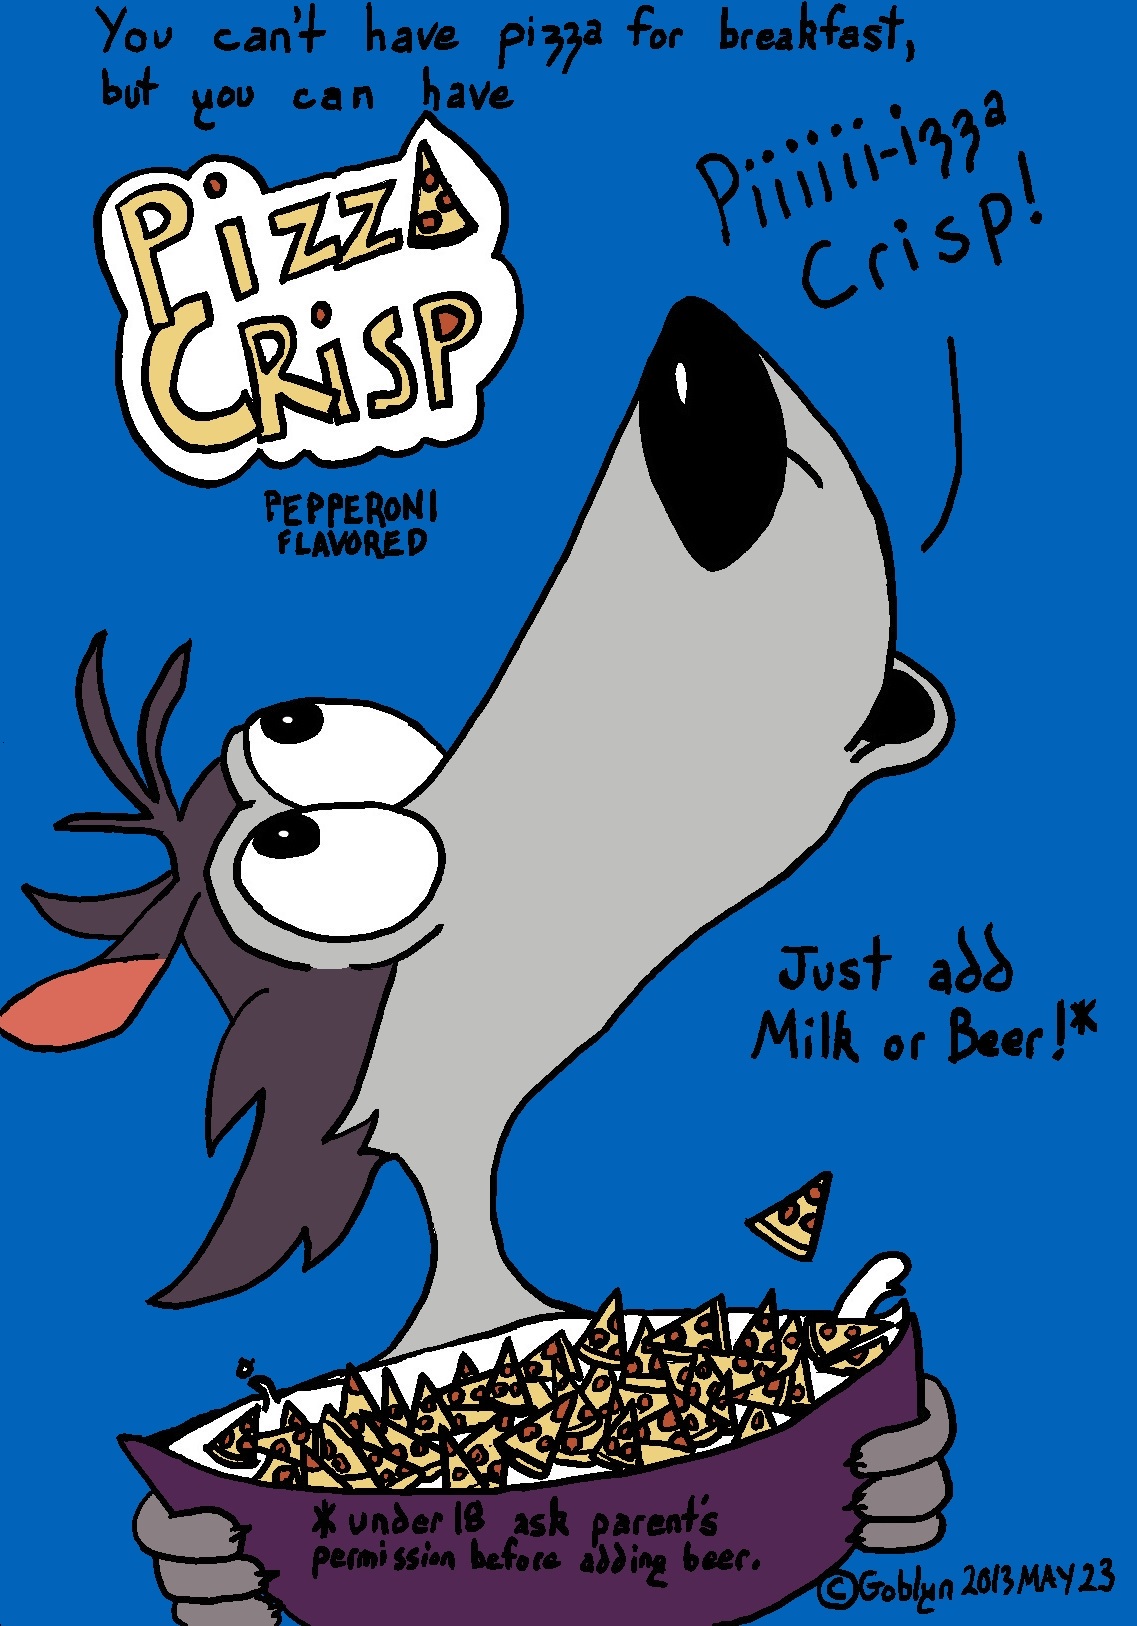 Goblyn's Comics, Pizza Crisp Cereal